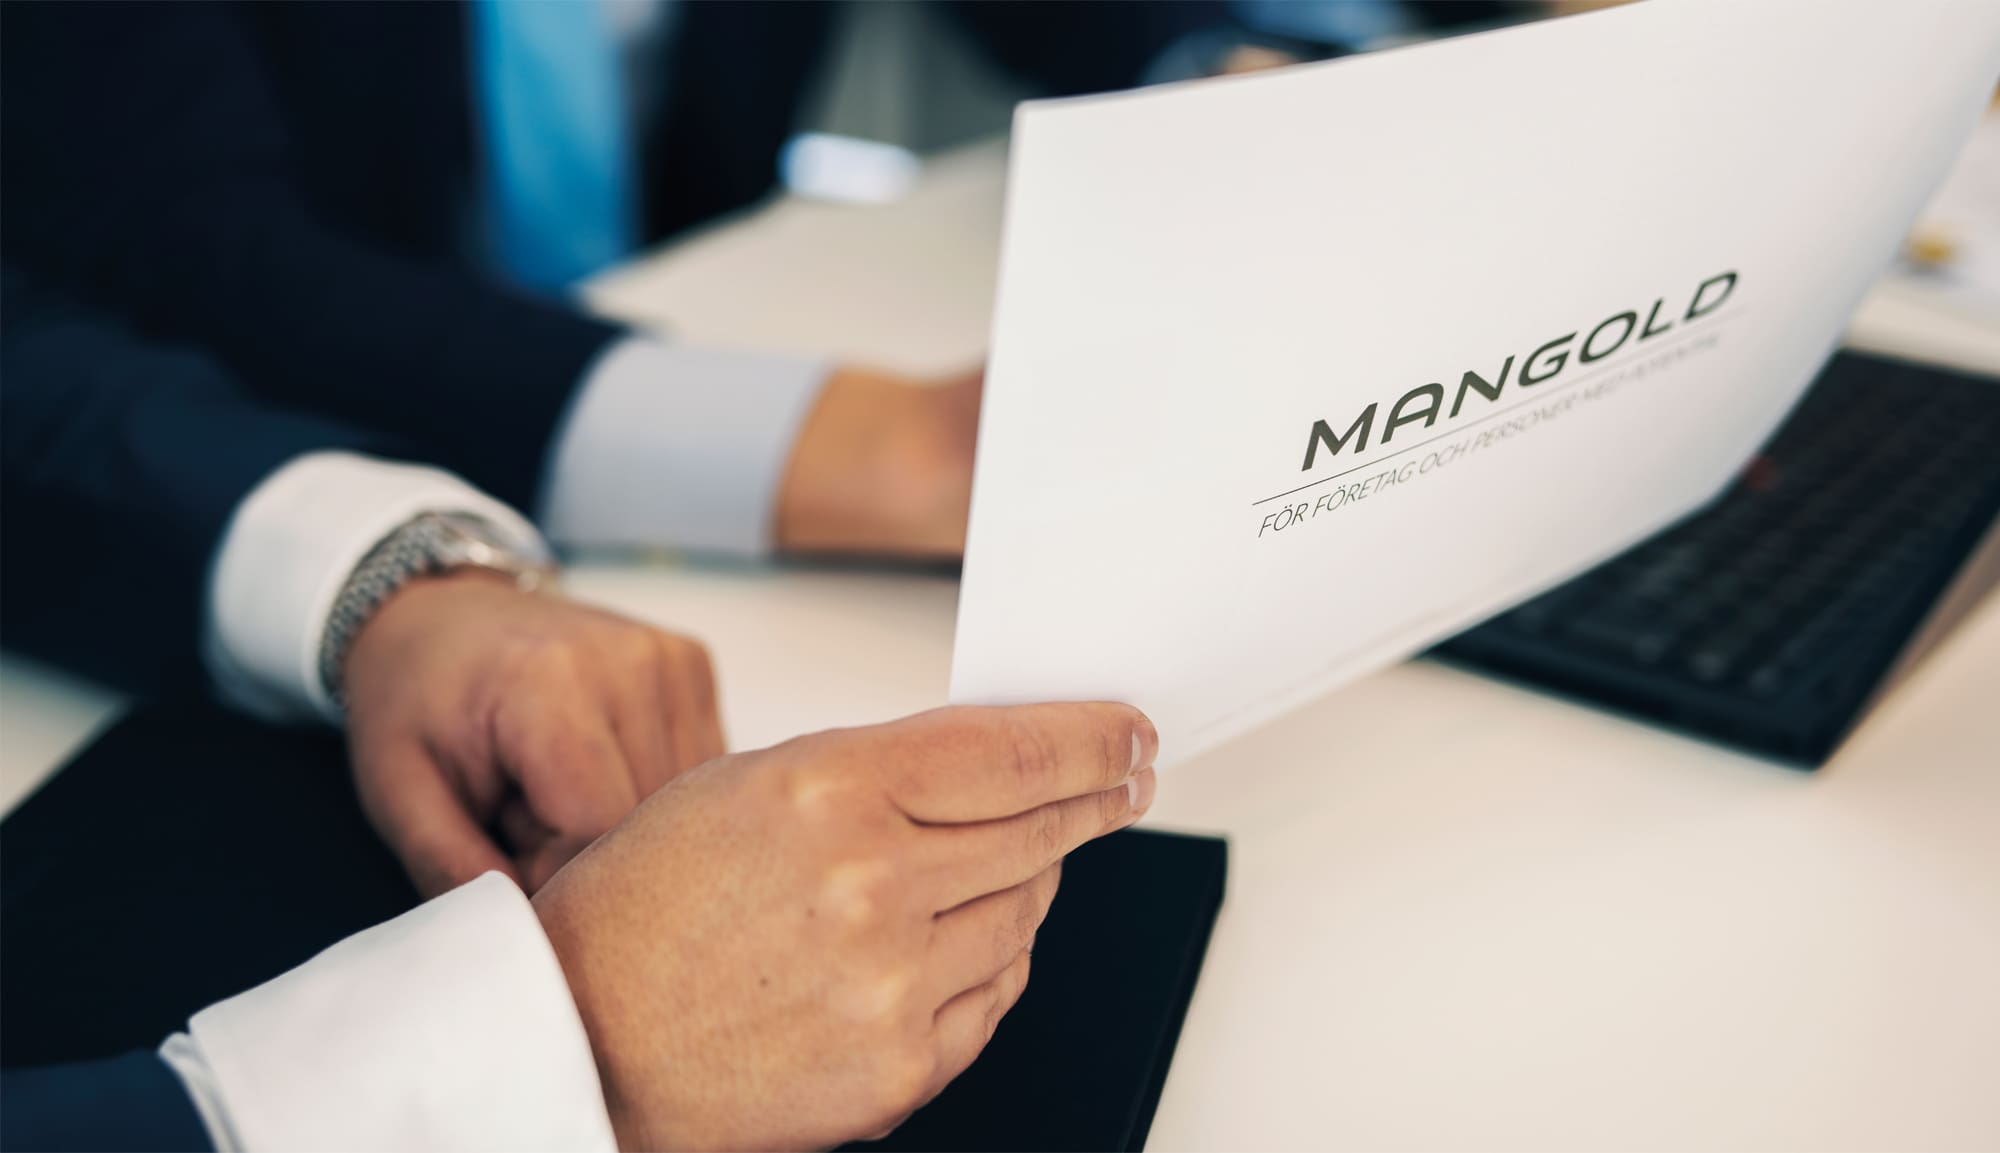 : Mangold har ägarintresse i flera bolag